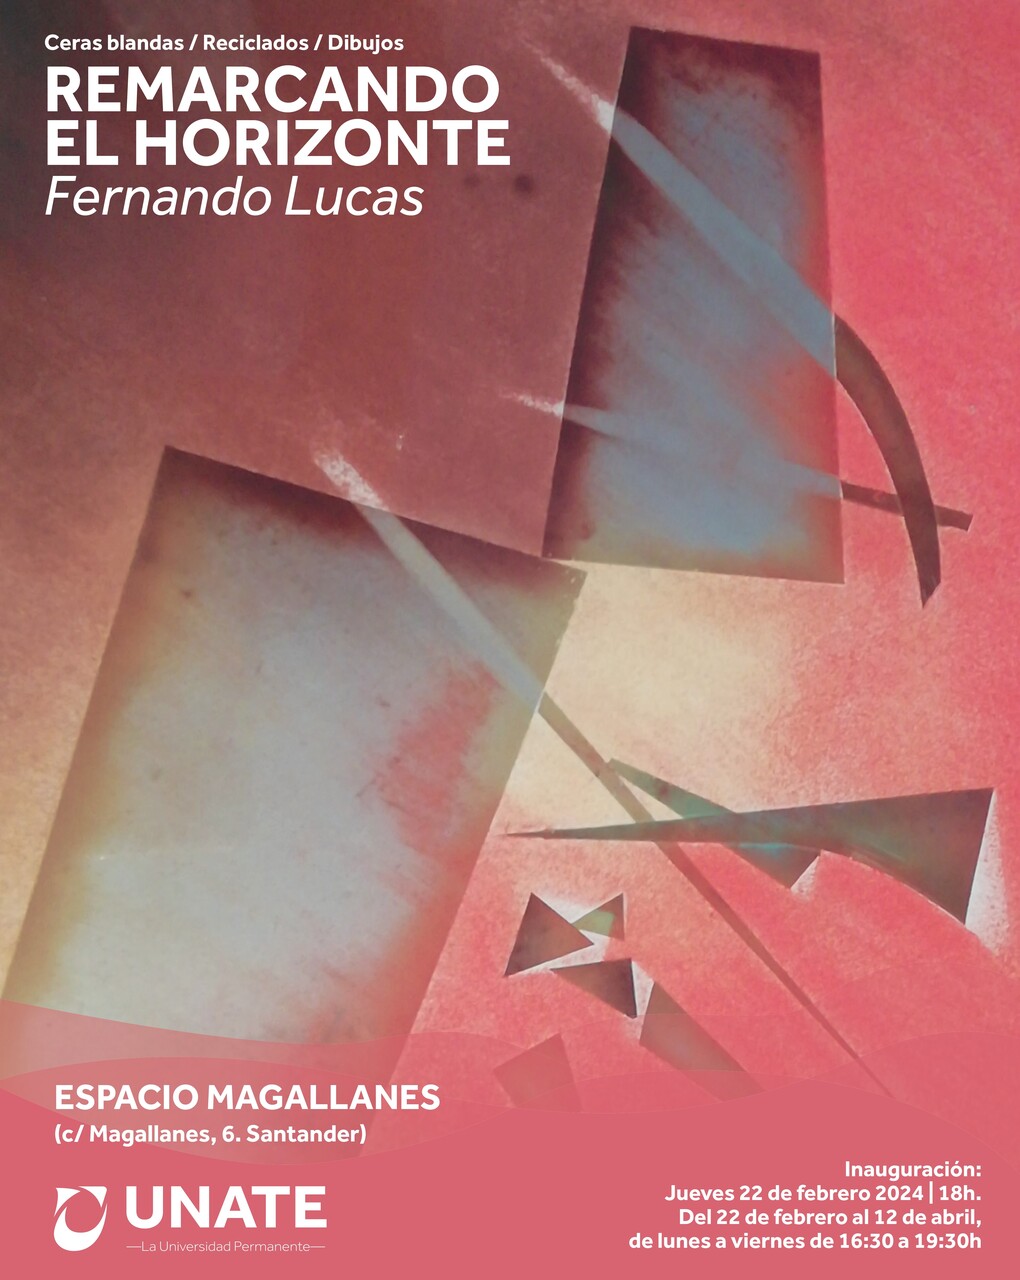 "Remarcando el horizonte", ceras blandas, reciclados y dibujos de Fernando Lucas Rodríguez